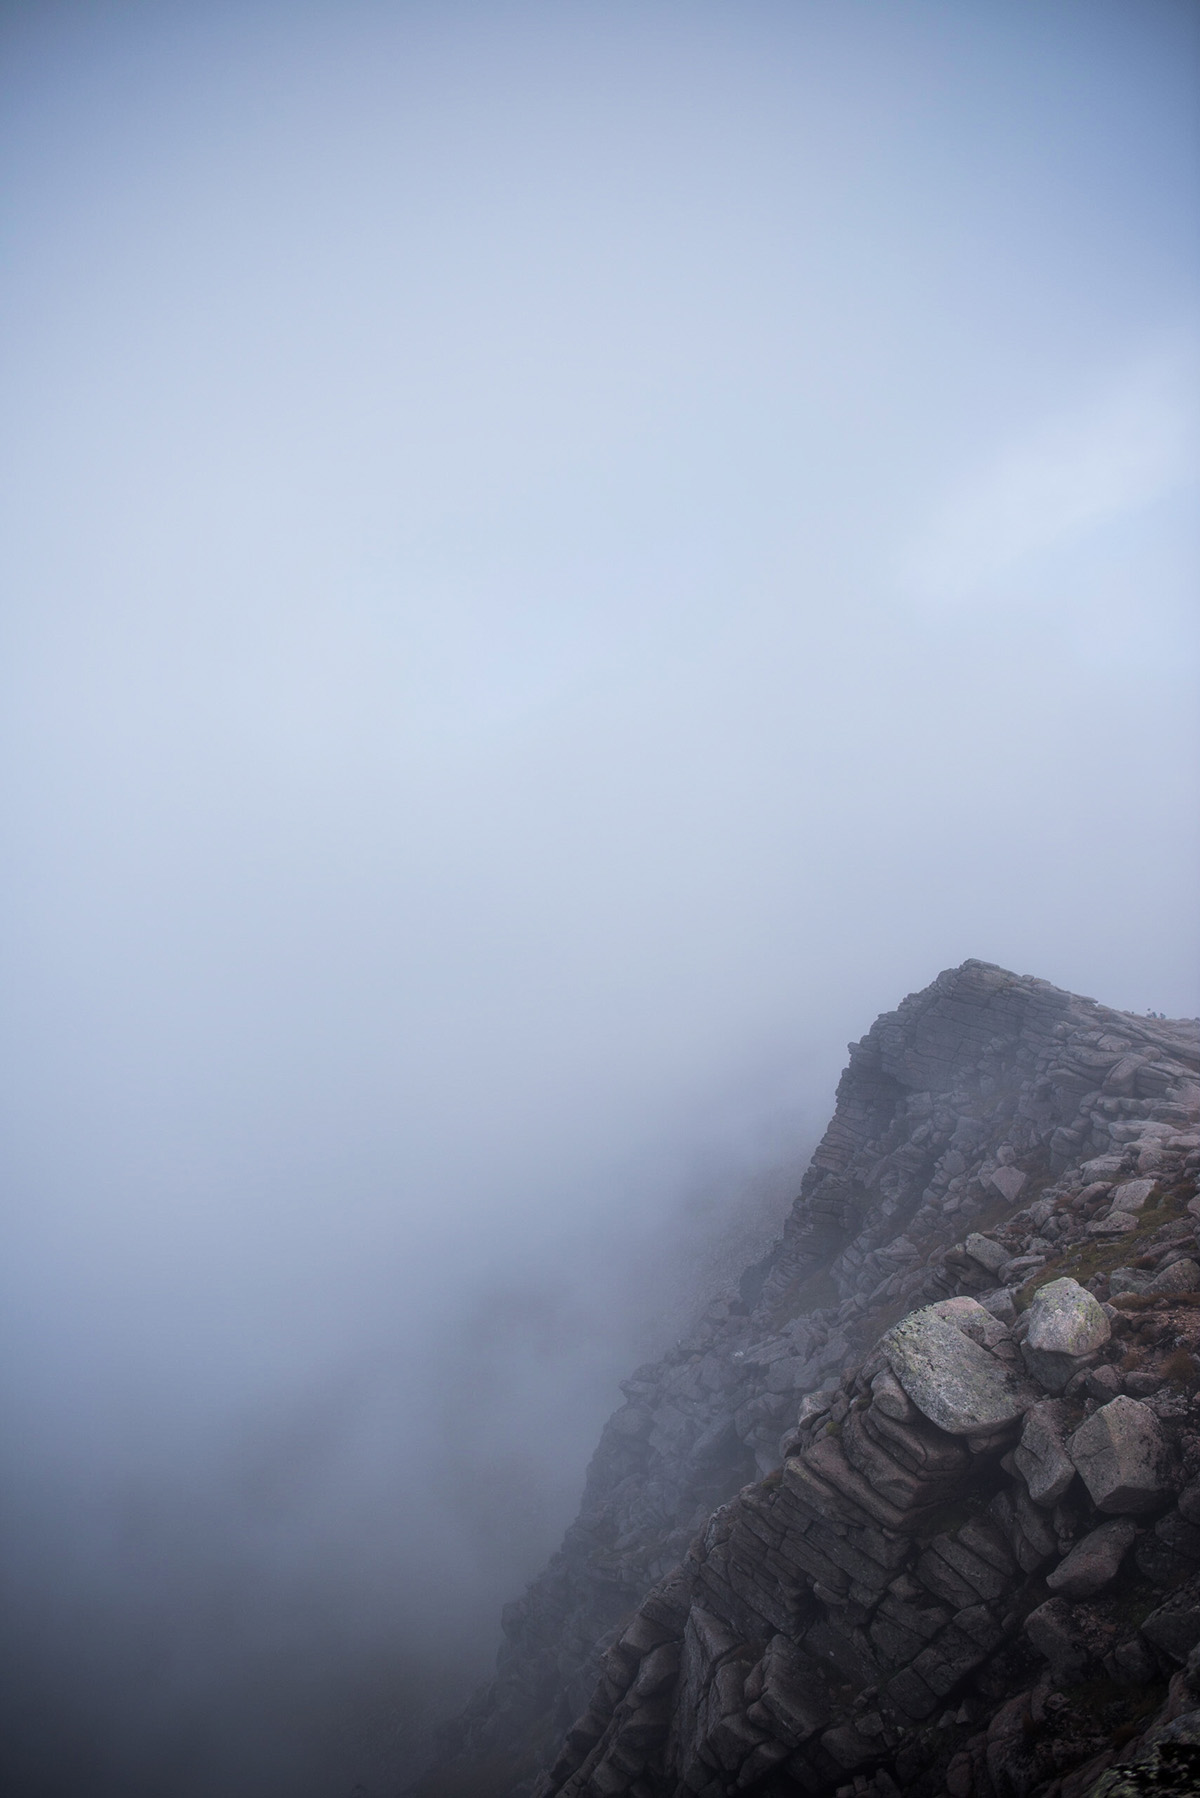 Top of the Cairn Gorm, Part II